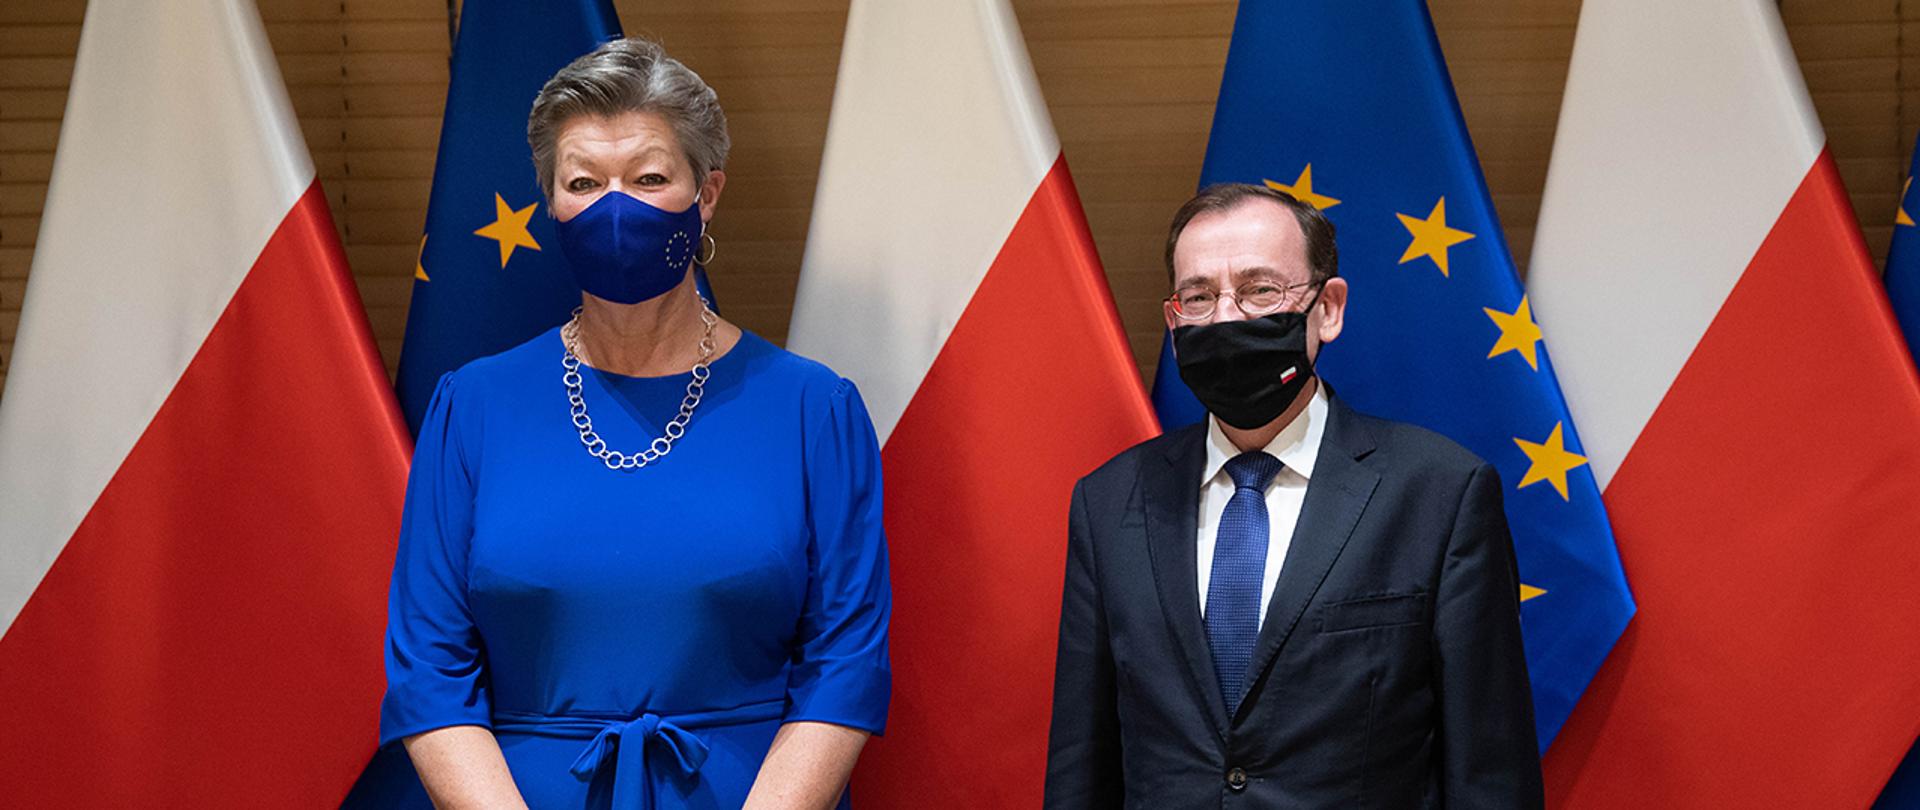 Minister Mariusz Kamiński oraz Ylva Johansson – unijna Komisarz do Spraw Wewnętrznych na tle flag Polski i Unii Europejskiej.